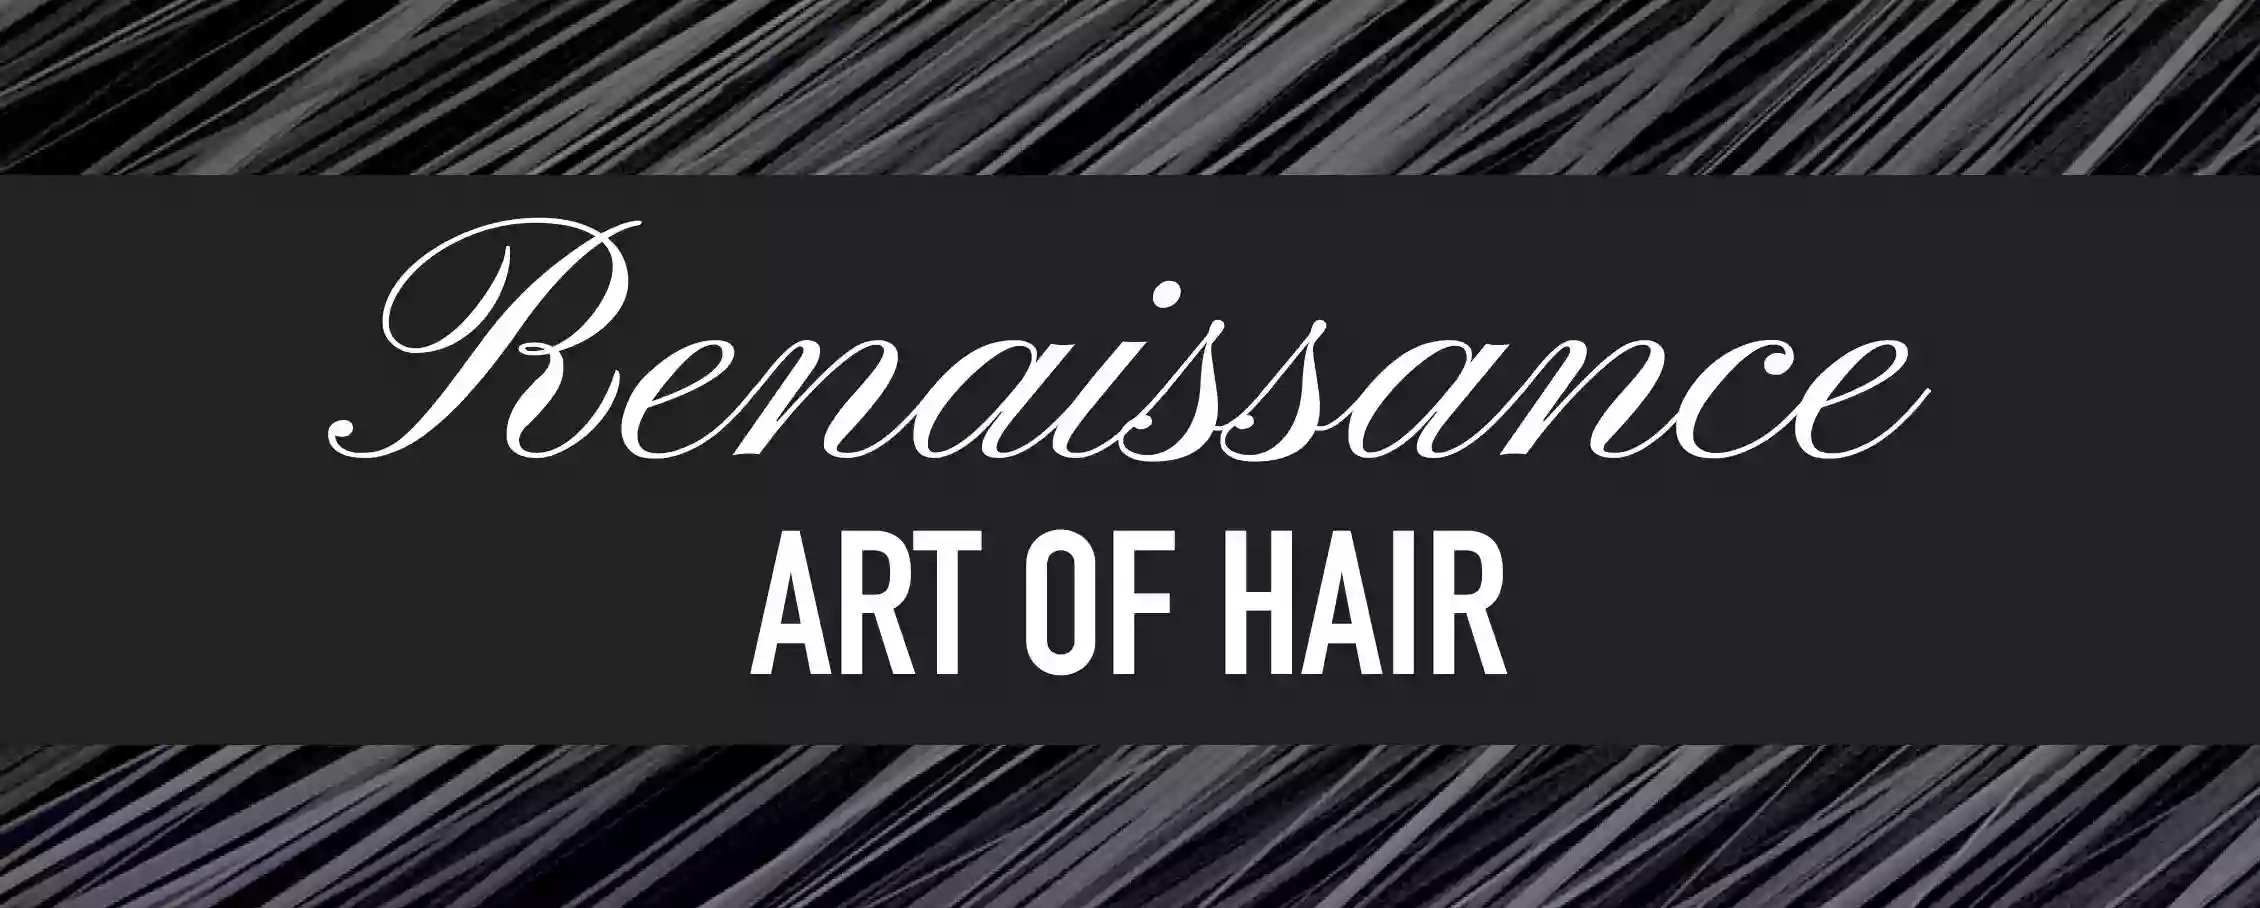 Renaissance Art Of Hair